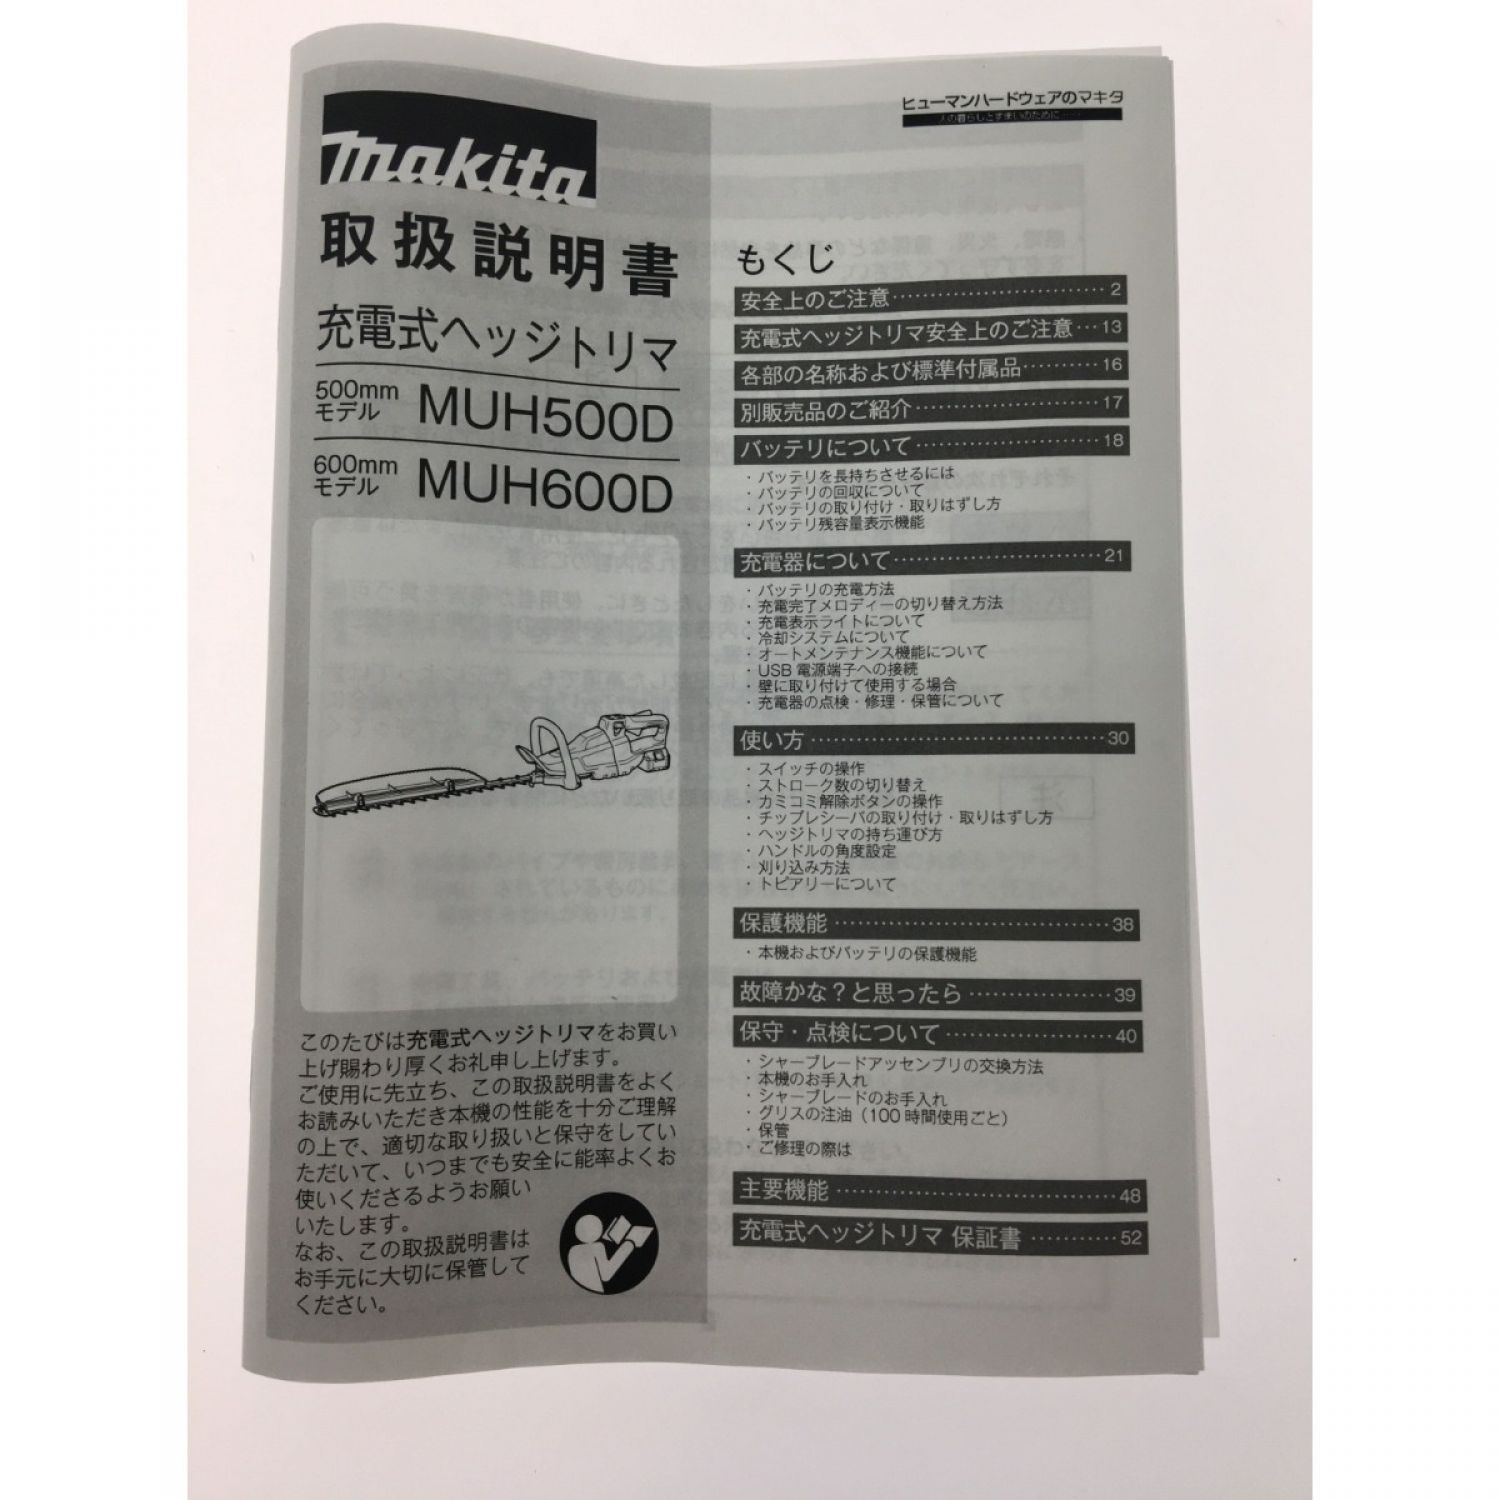 (マキタ) 充電式ヘッジトリマ MUH500DRG バッテリBL1860B・充電器DC18RF付 刈込幅500mm 18V対応 makita 大型商品 - 5